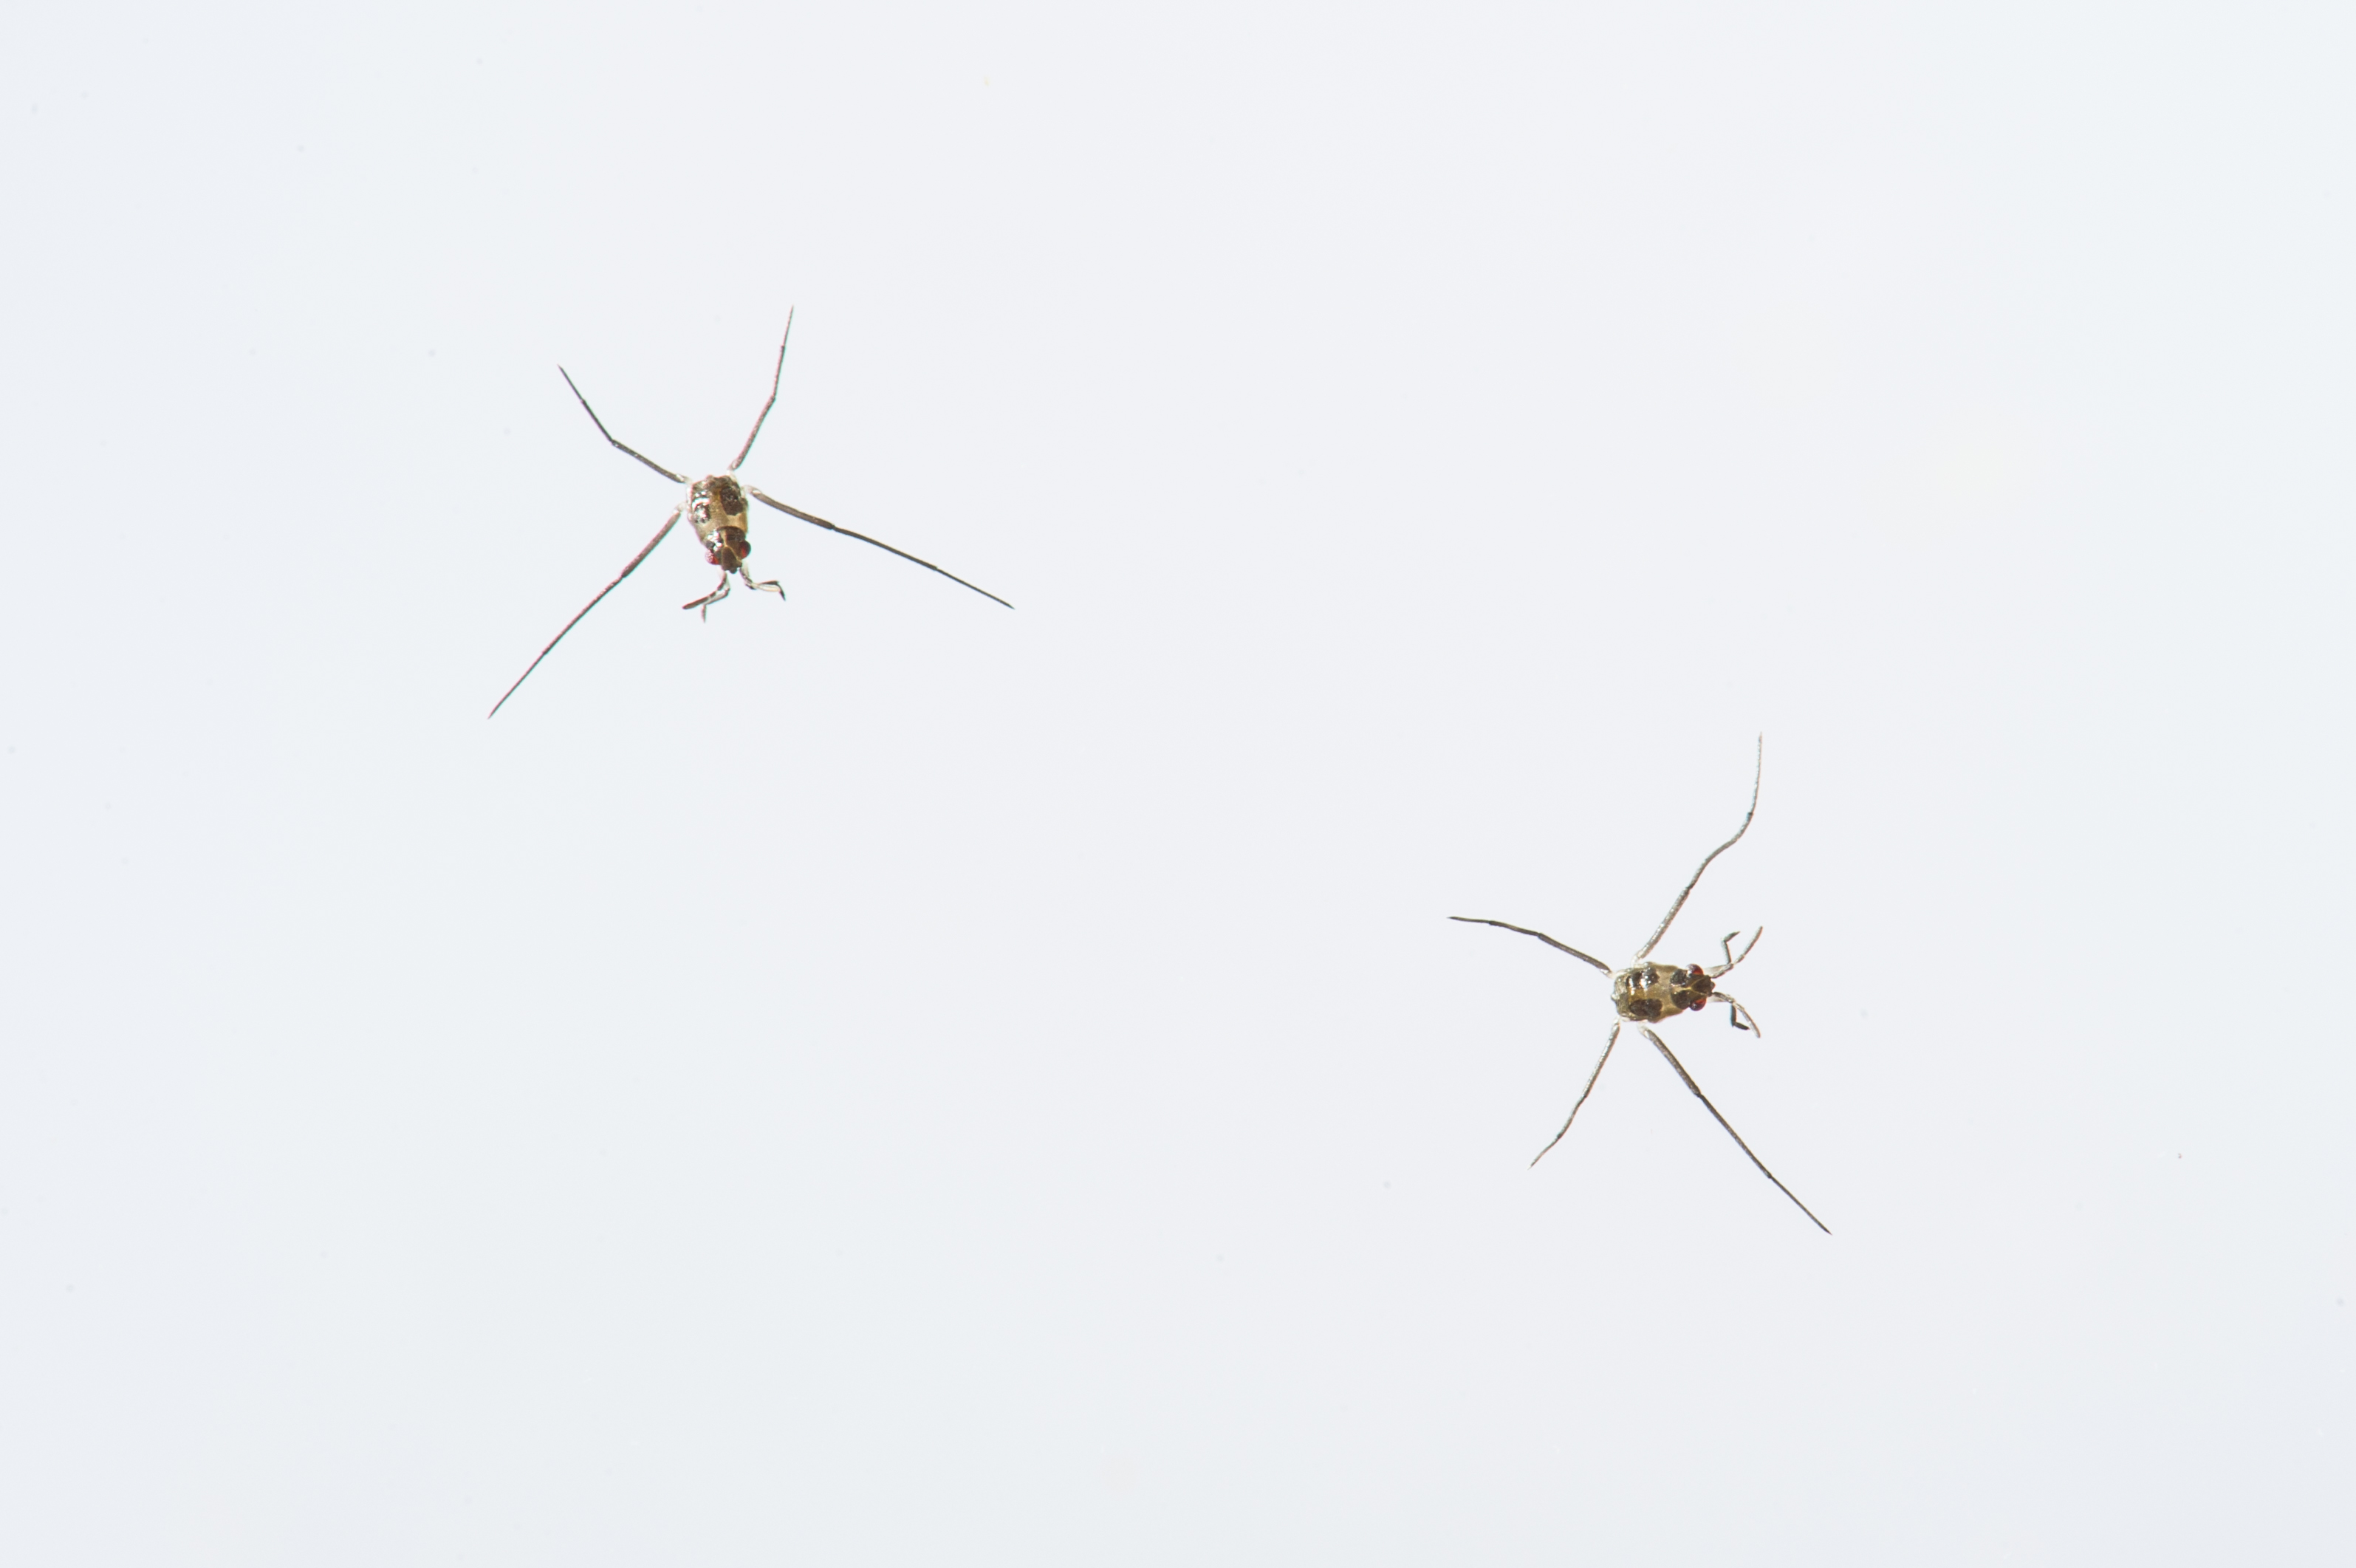 アメンボ ナミアメンボ の特徴やサンマとの意外な共通点 虫の写真と生態なら昆虫写真図鑑 ムシミル